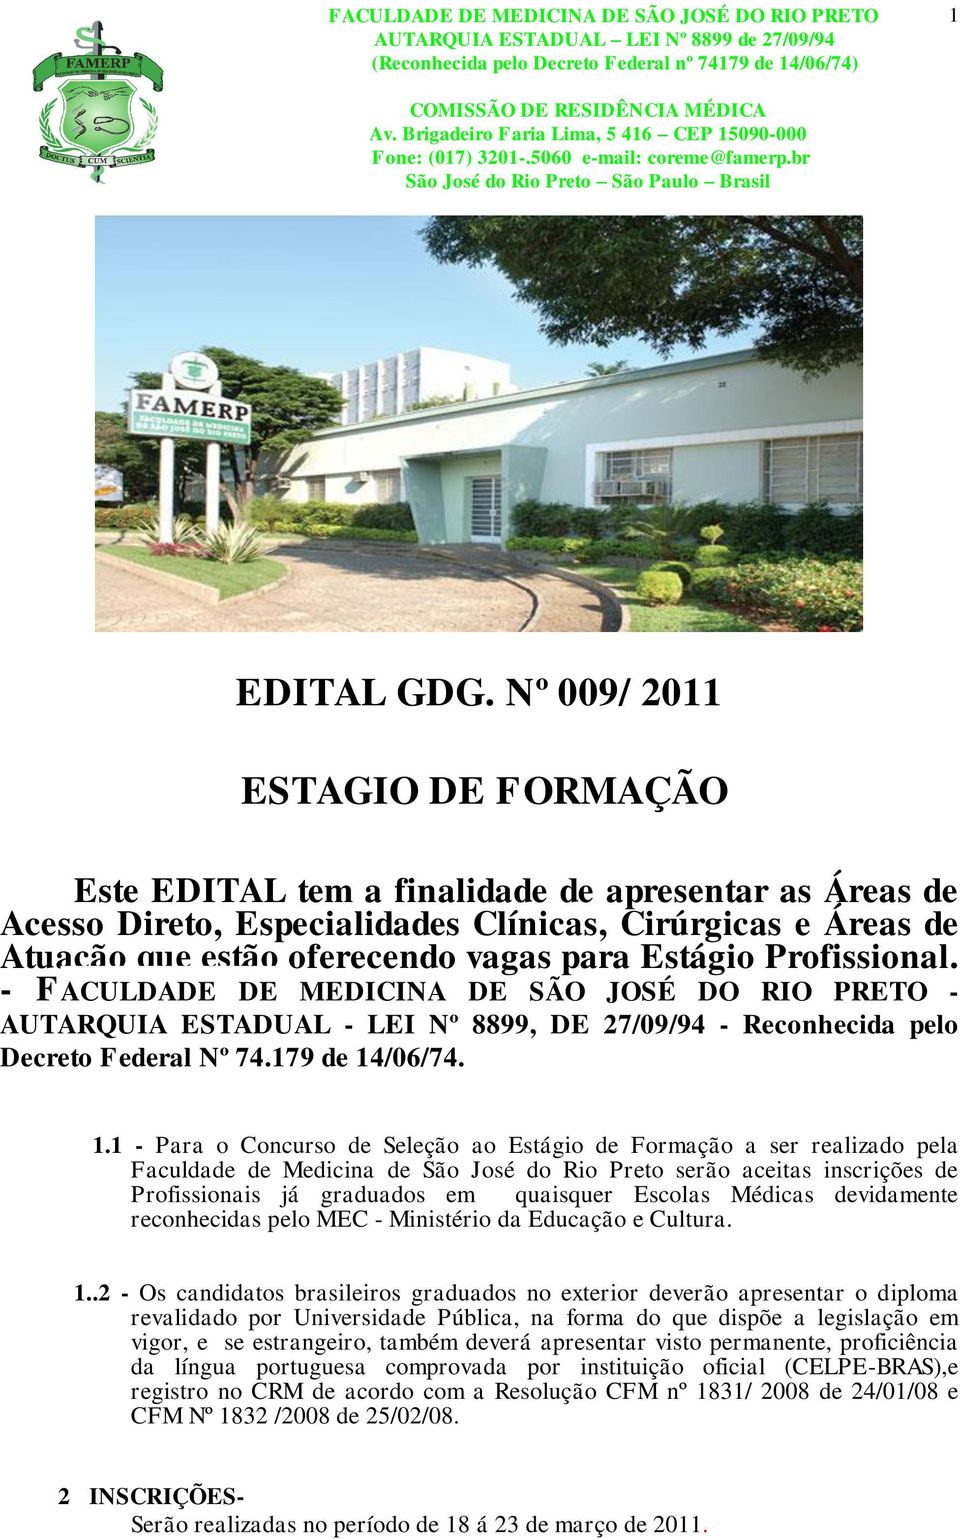 Profissional. - FACULDADE DE MEDICINA DE SÃO JOSÉ DO RIO PRETO - AUTARQUIA ESTADUAL - LEI Nº 8899, DE 27/09/94 - Reconhecida pelo Decreto Federal Nº 74.179 de 14